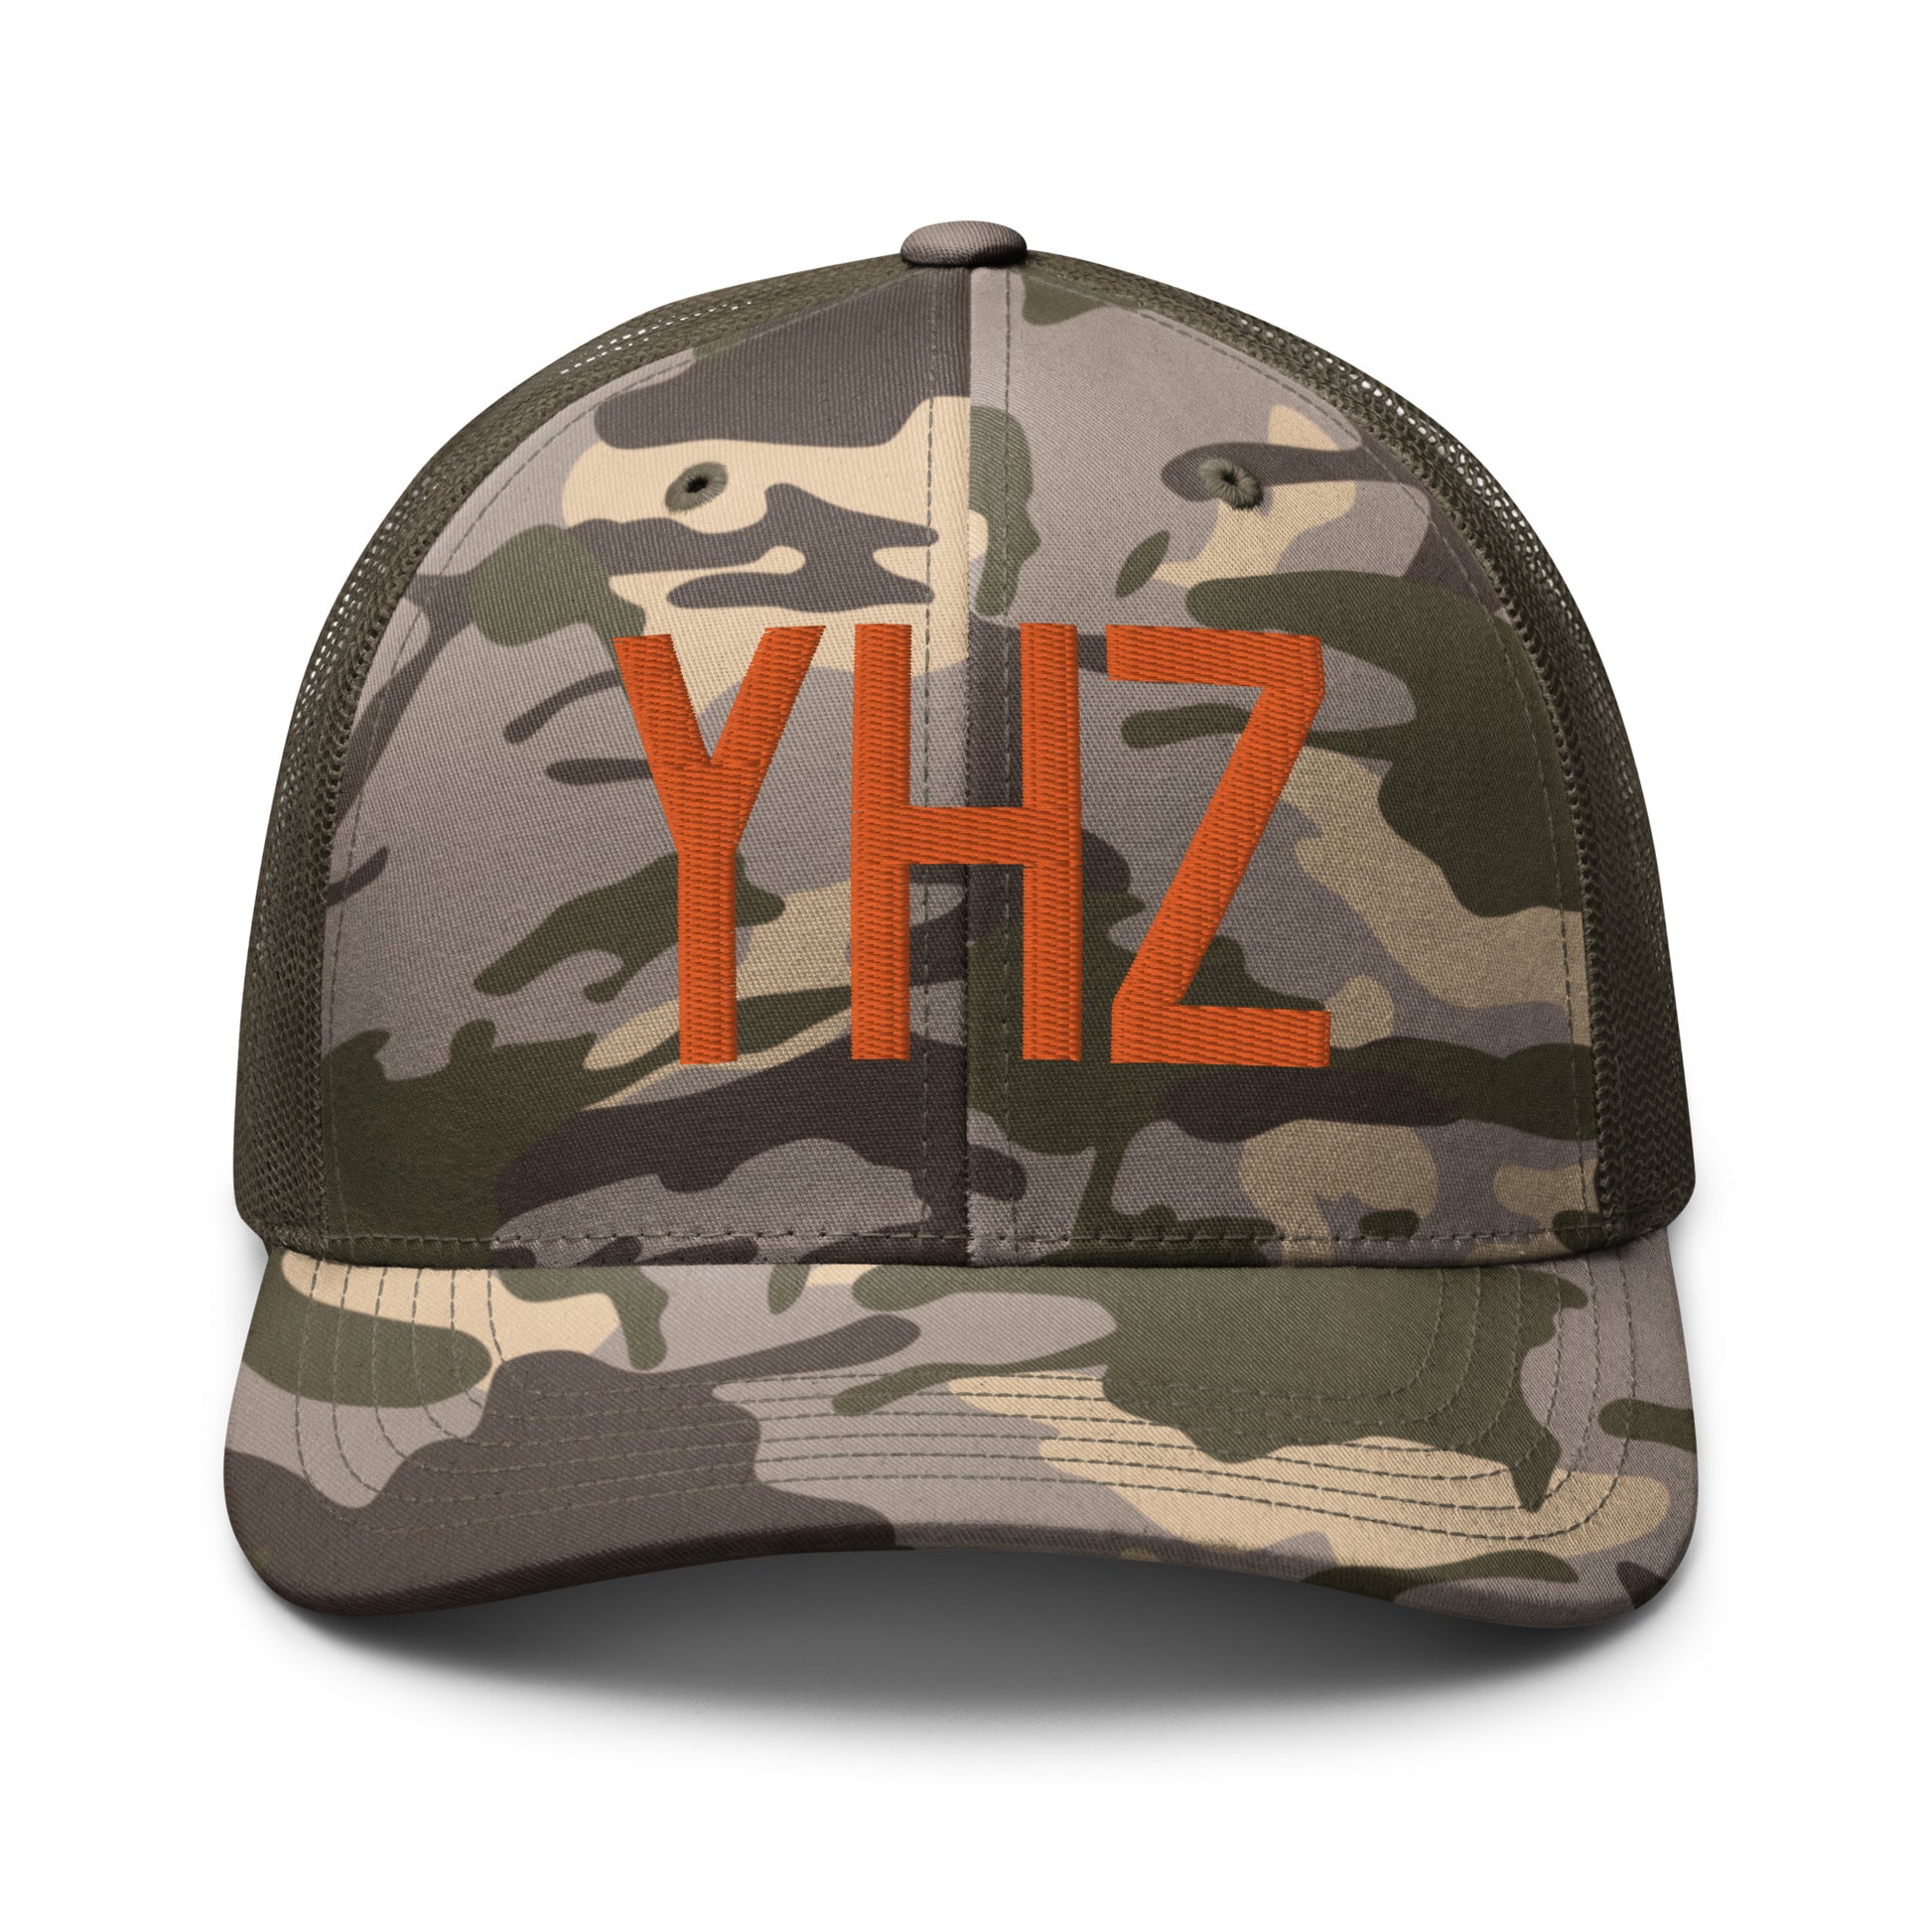 Airport Code Camouflage Trucker Hat - Orange • YHZ Halifax • YHM Designs - Image 17